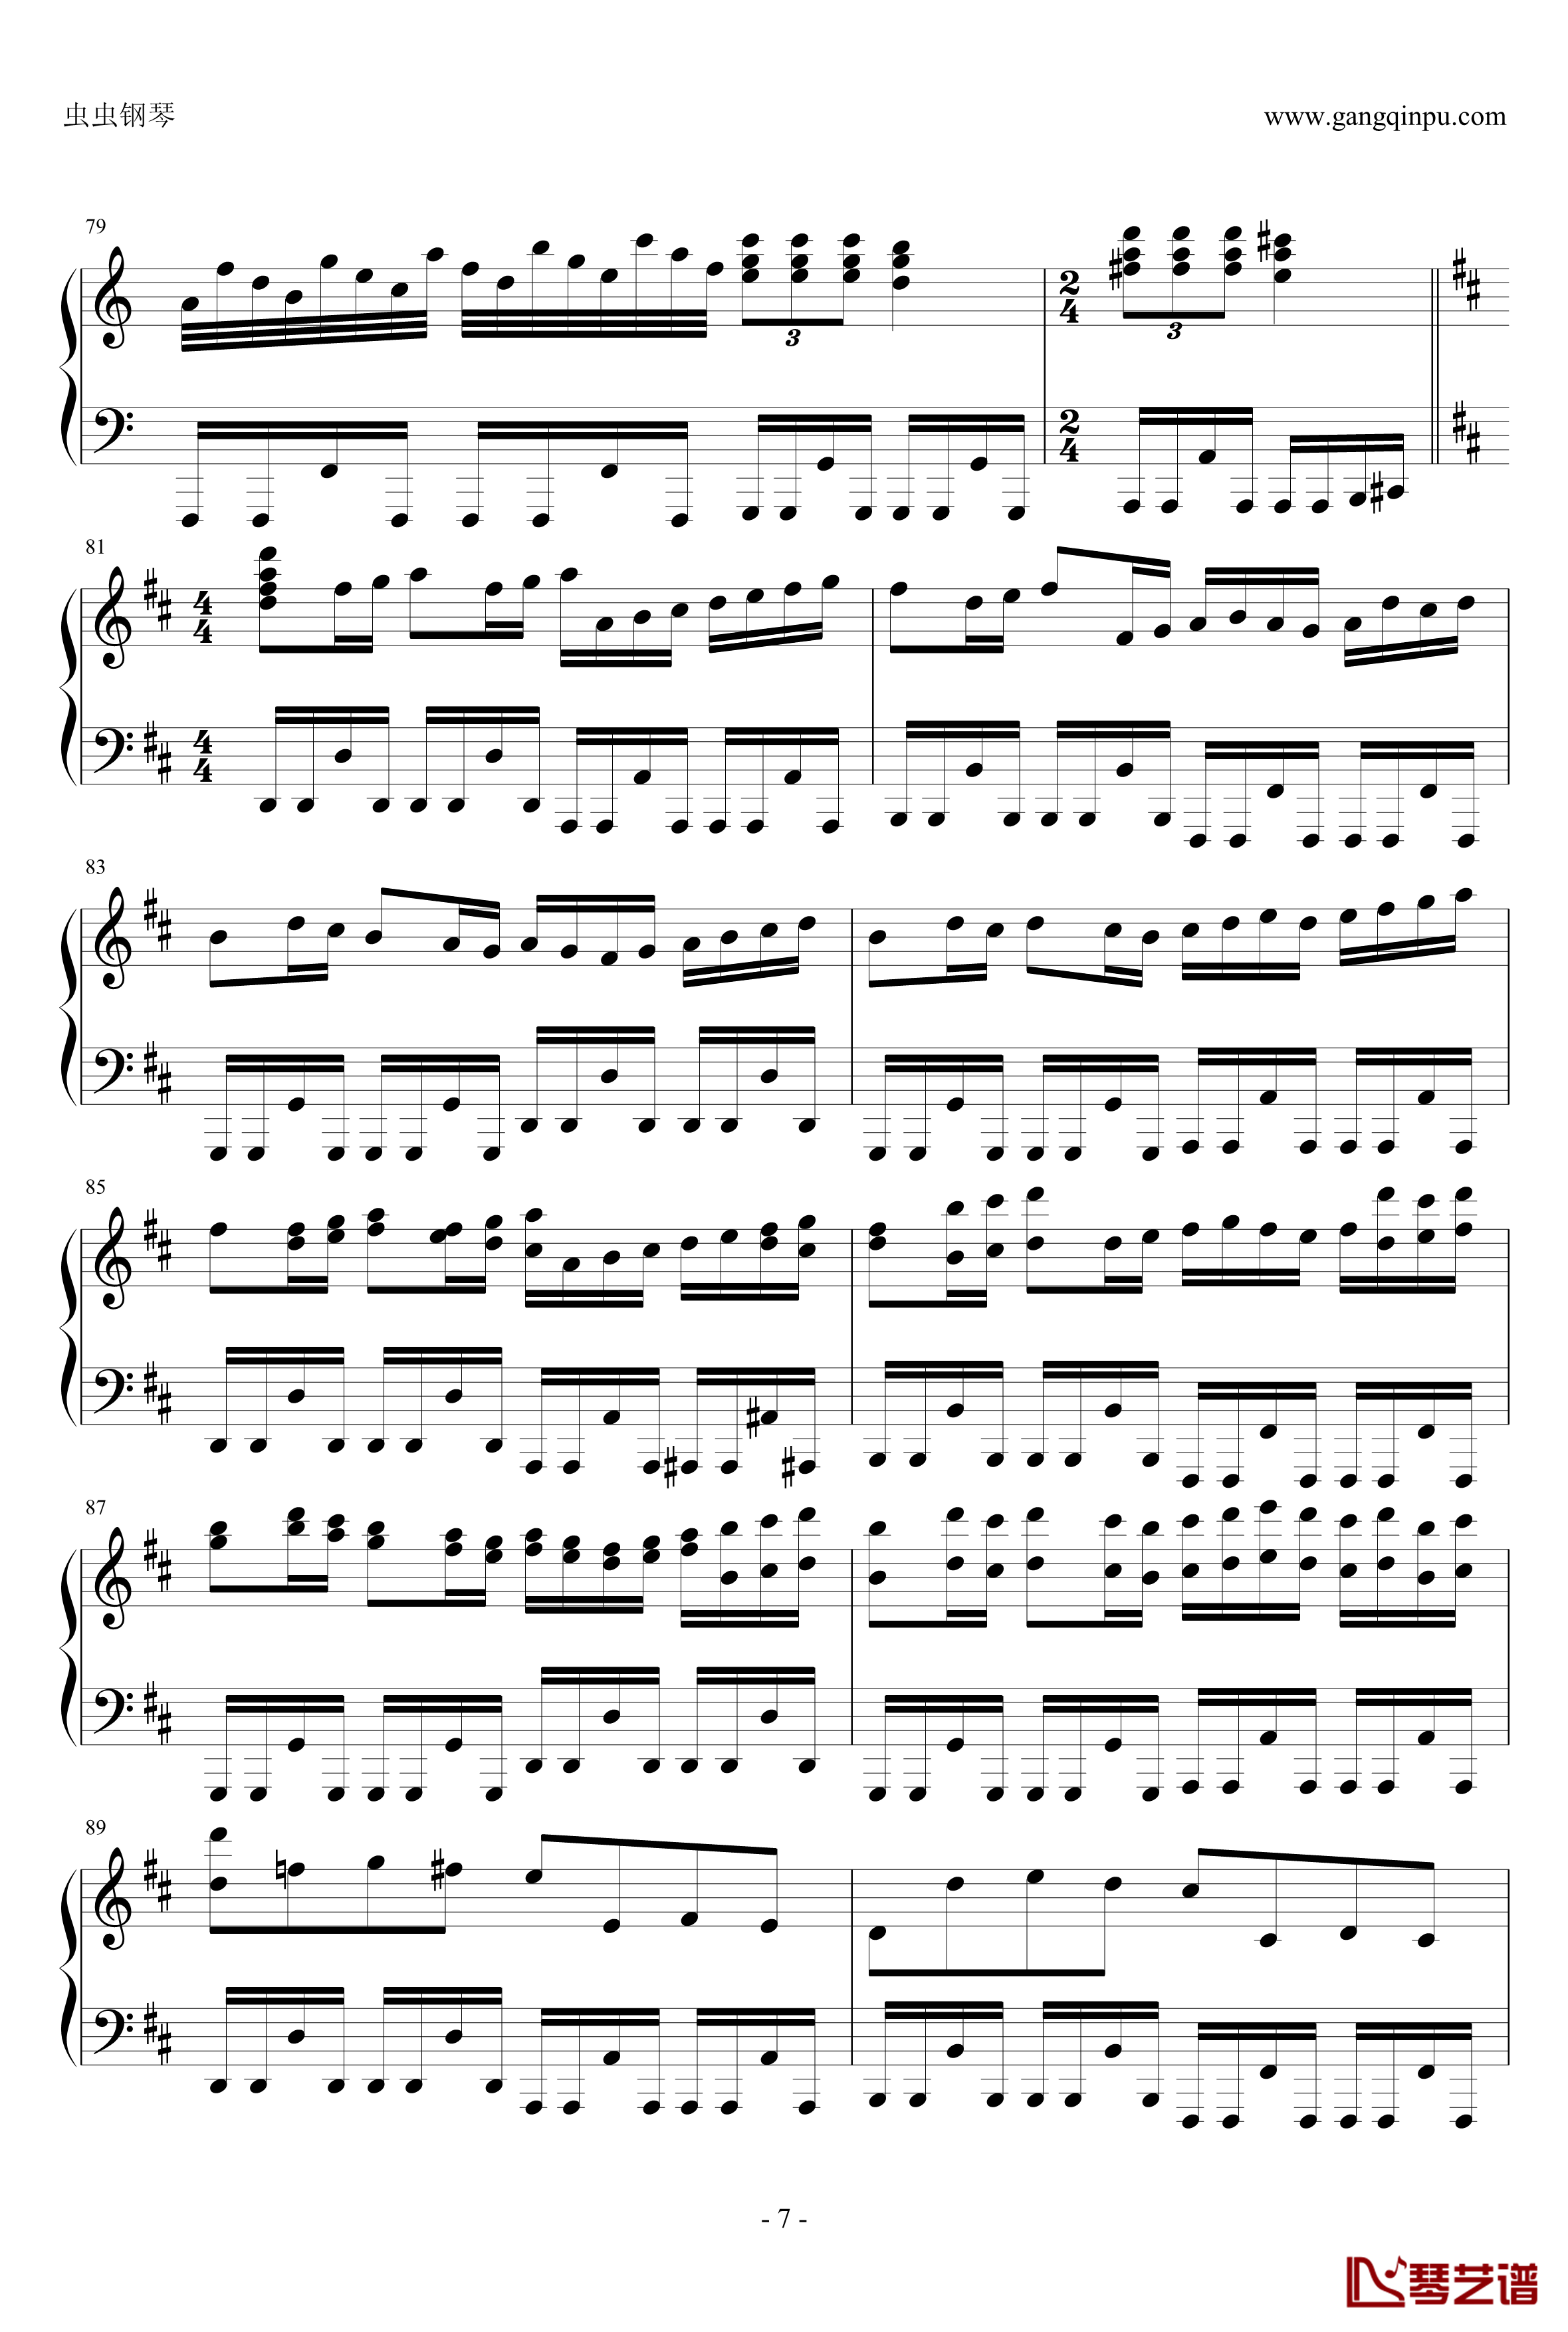 卡农疯狂摇滚版钢琴谱-约翰·巴哈贝尔7